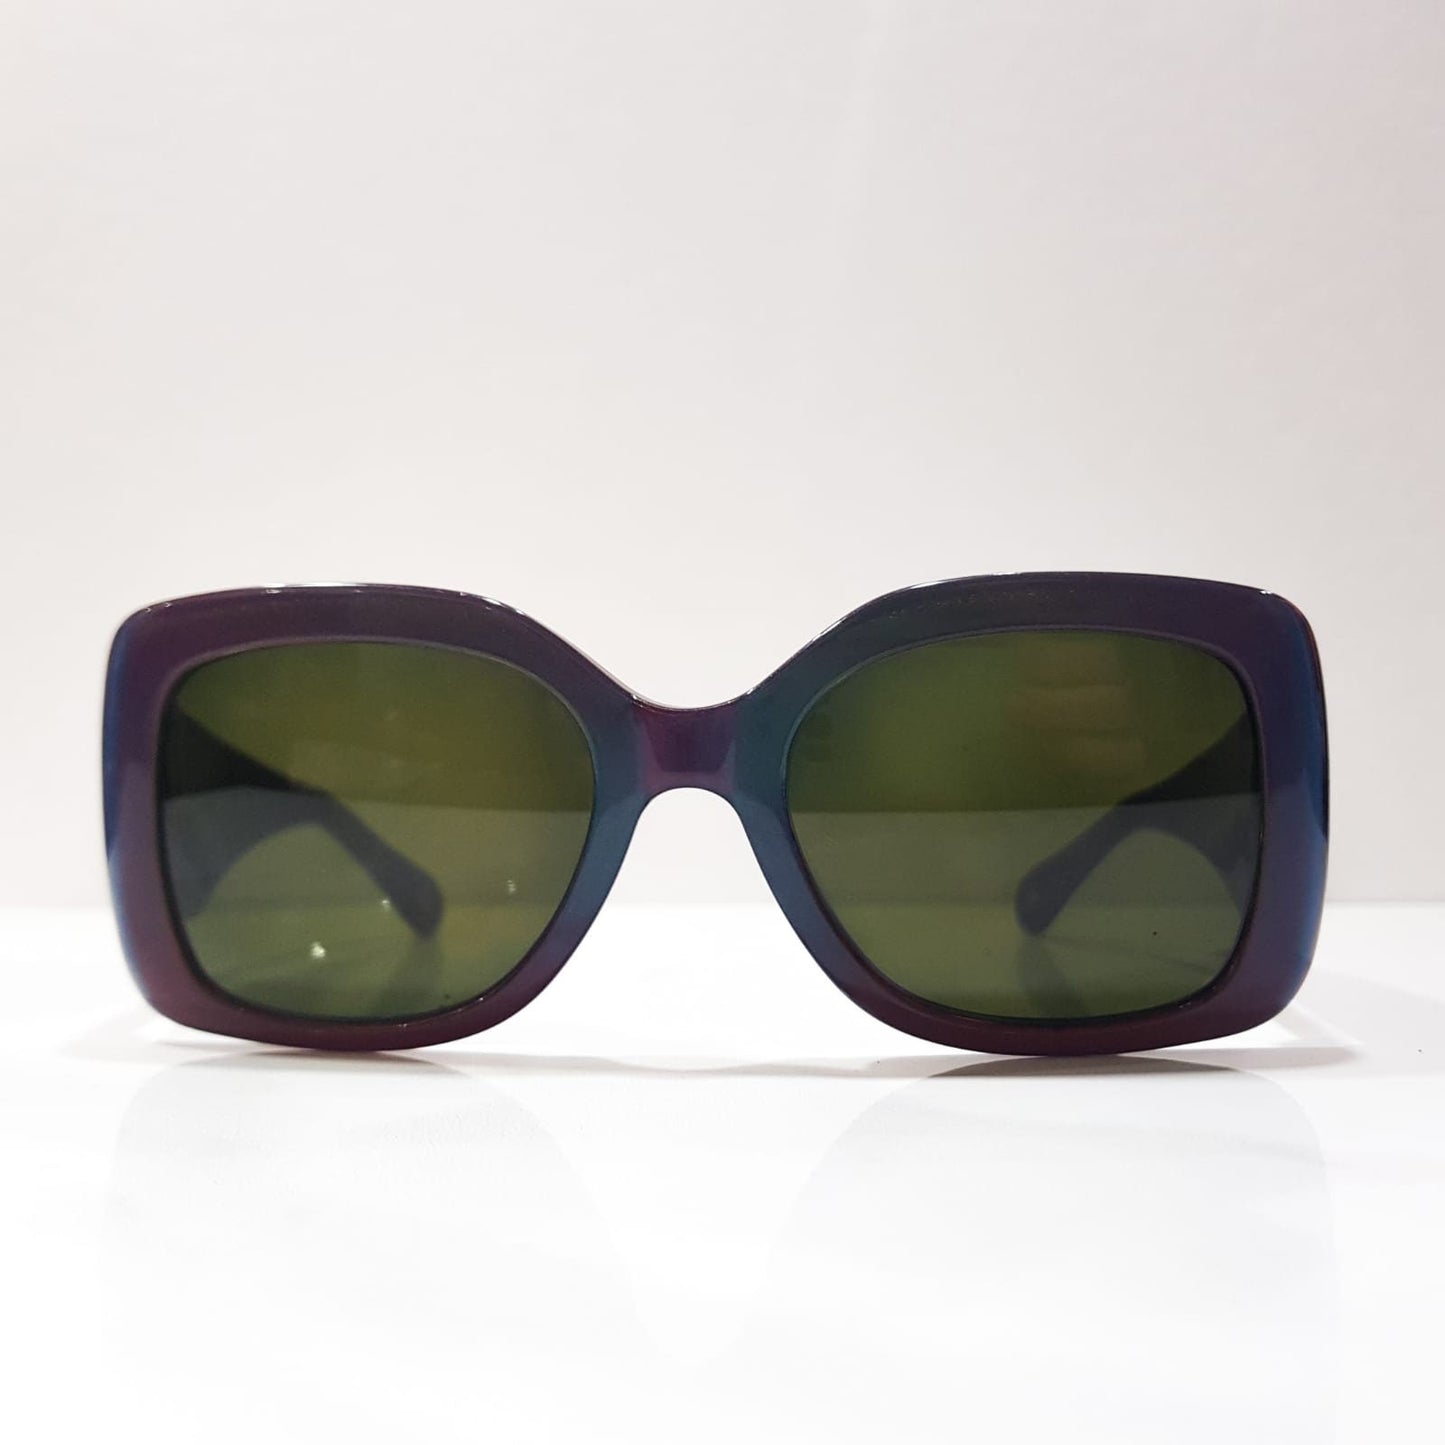 Chanel 5019 occhiali da sole vintage occhiali gafas anni '90 made in italy y2k